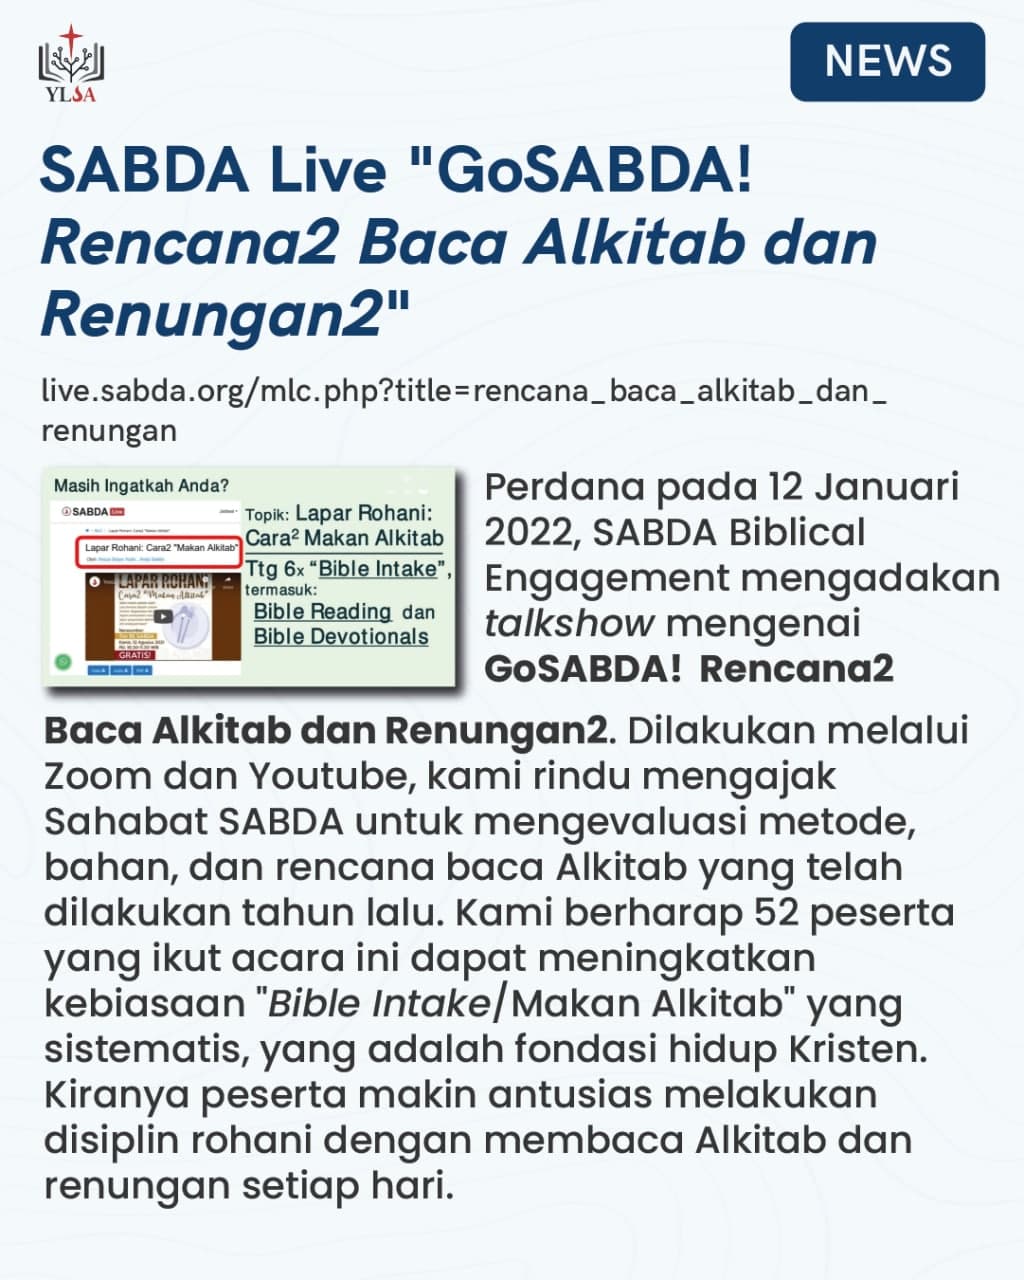 Pada 12 Januari 2022, SABDA Biblical Engagement mengadakan talkshow mengenai "GoSABDA! Rencana2 Baca Alkitab dan Renungan2".